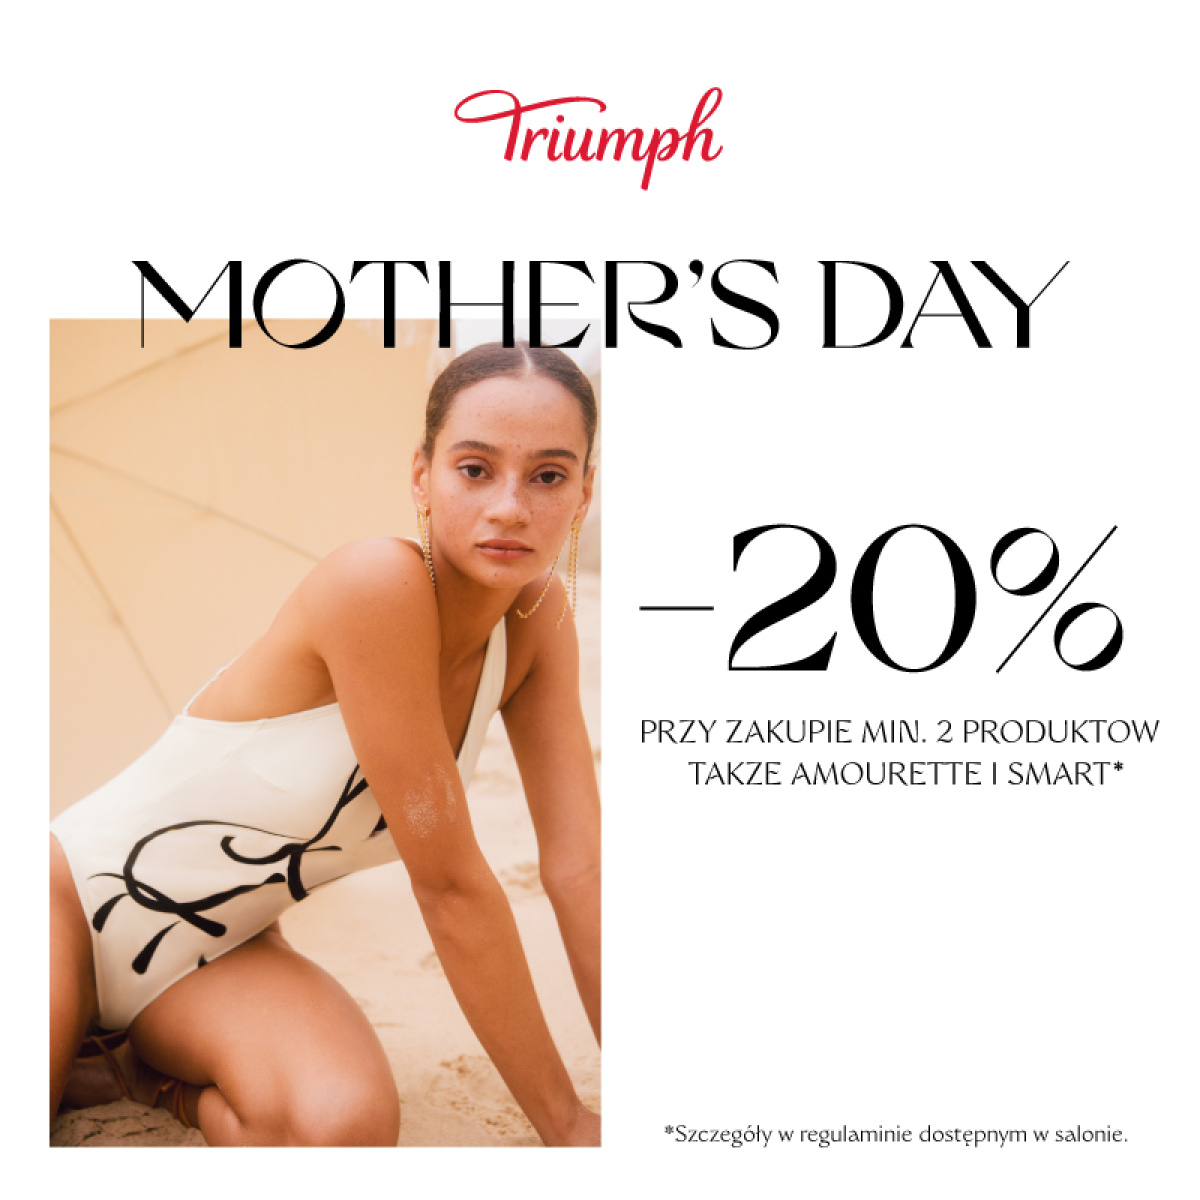 TRIUMPH - Mother's Day -20% przy zakupie min. 2 produktów